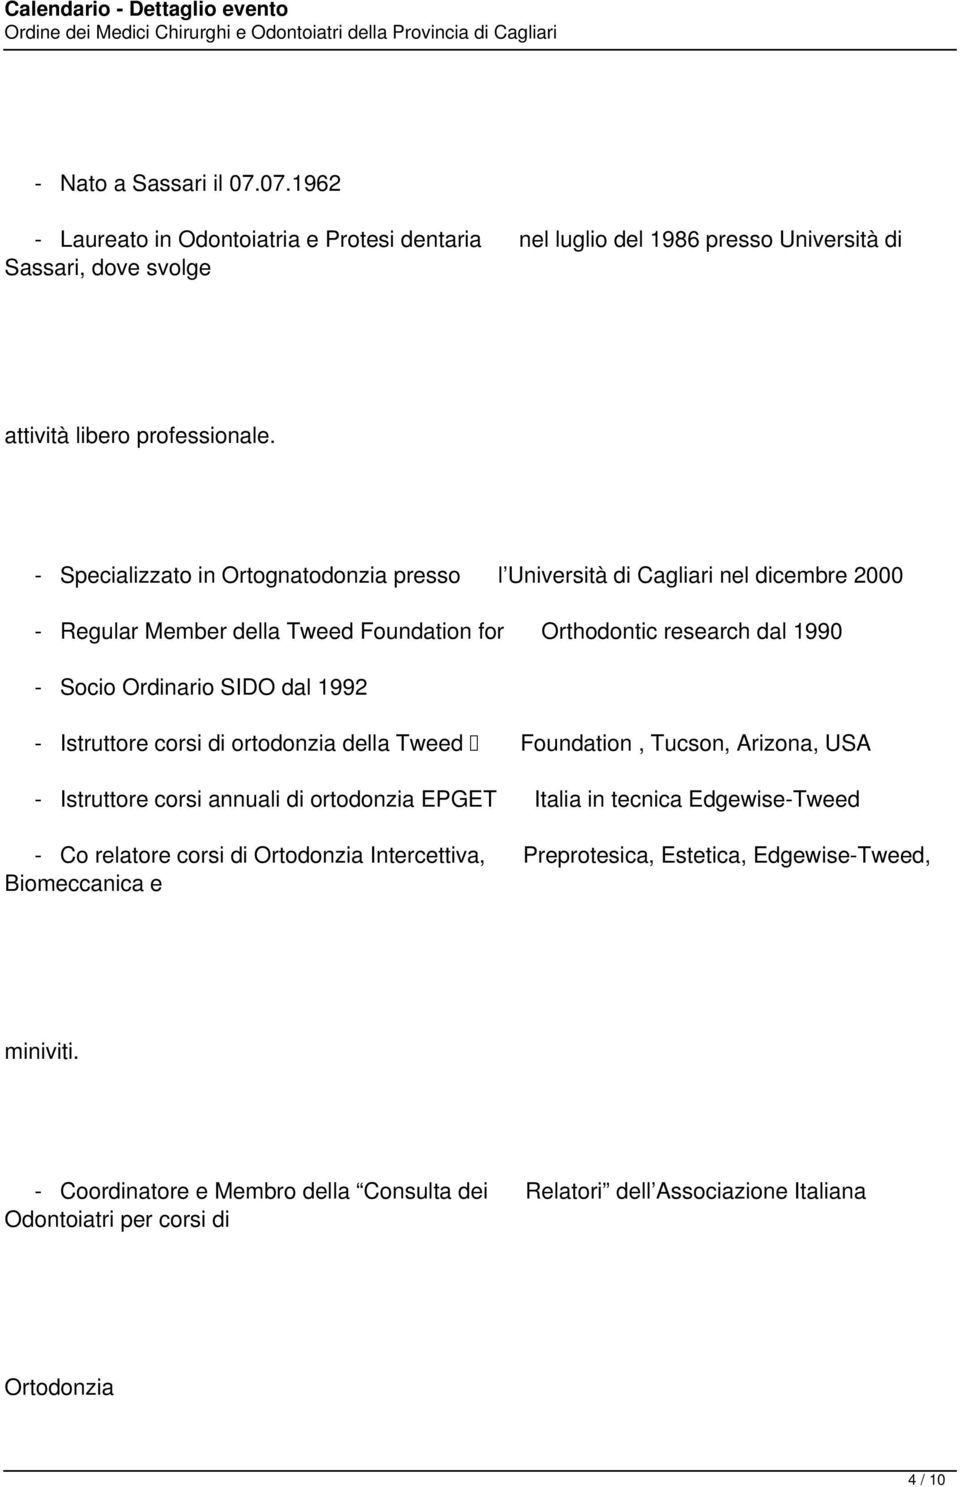 1992 - Istruttore corsi di ortodonzia della Tweed Foundation, Tucson, Arizona, USA - Istruttore corsi annuali di ortodonzia EPGET Italia in tecnica Edgewise-Tweed - Co relatore corsi di